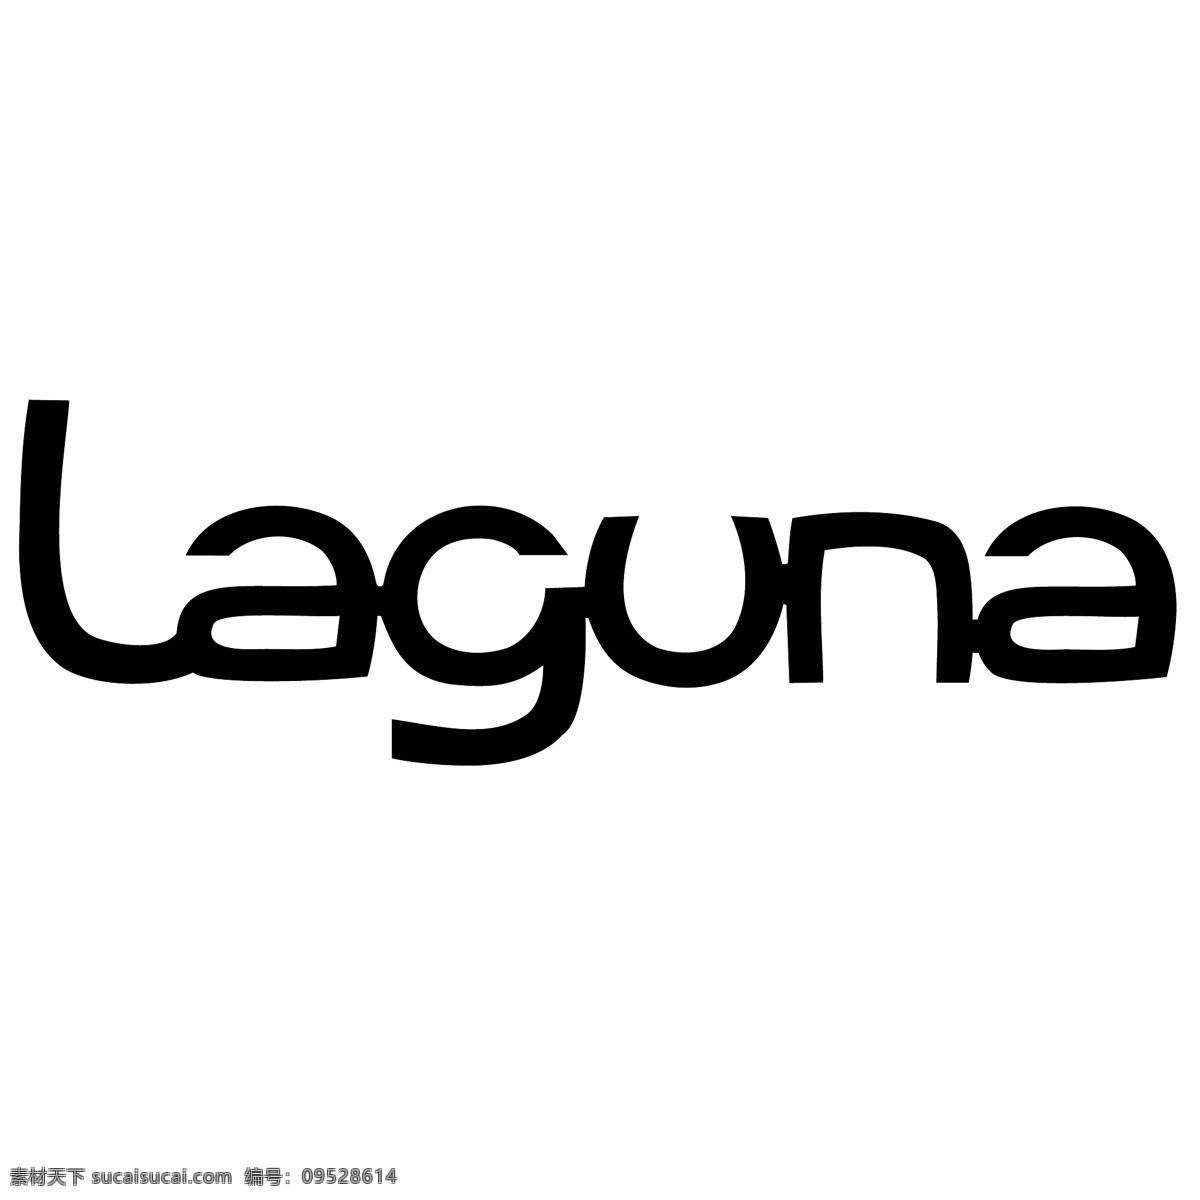 雷诺 laguna 免费 标识 psd源文件 logo设计